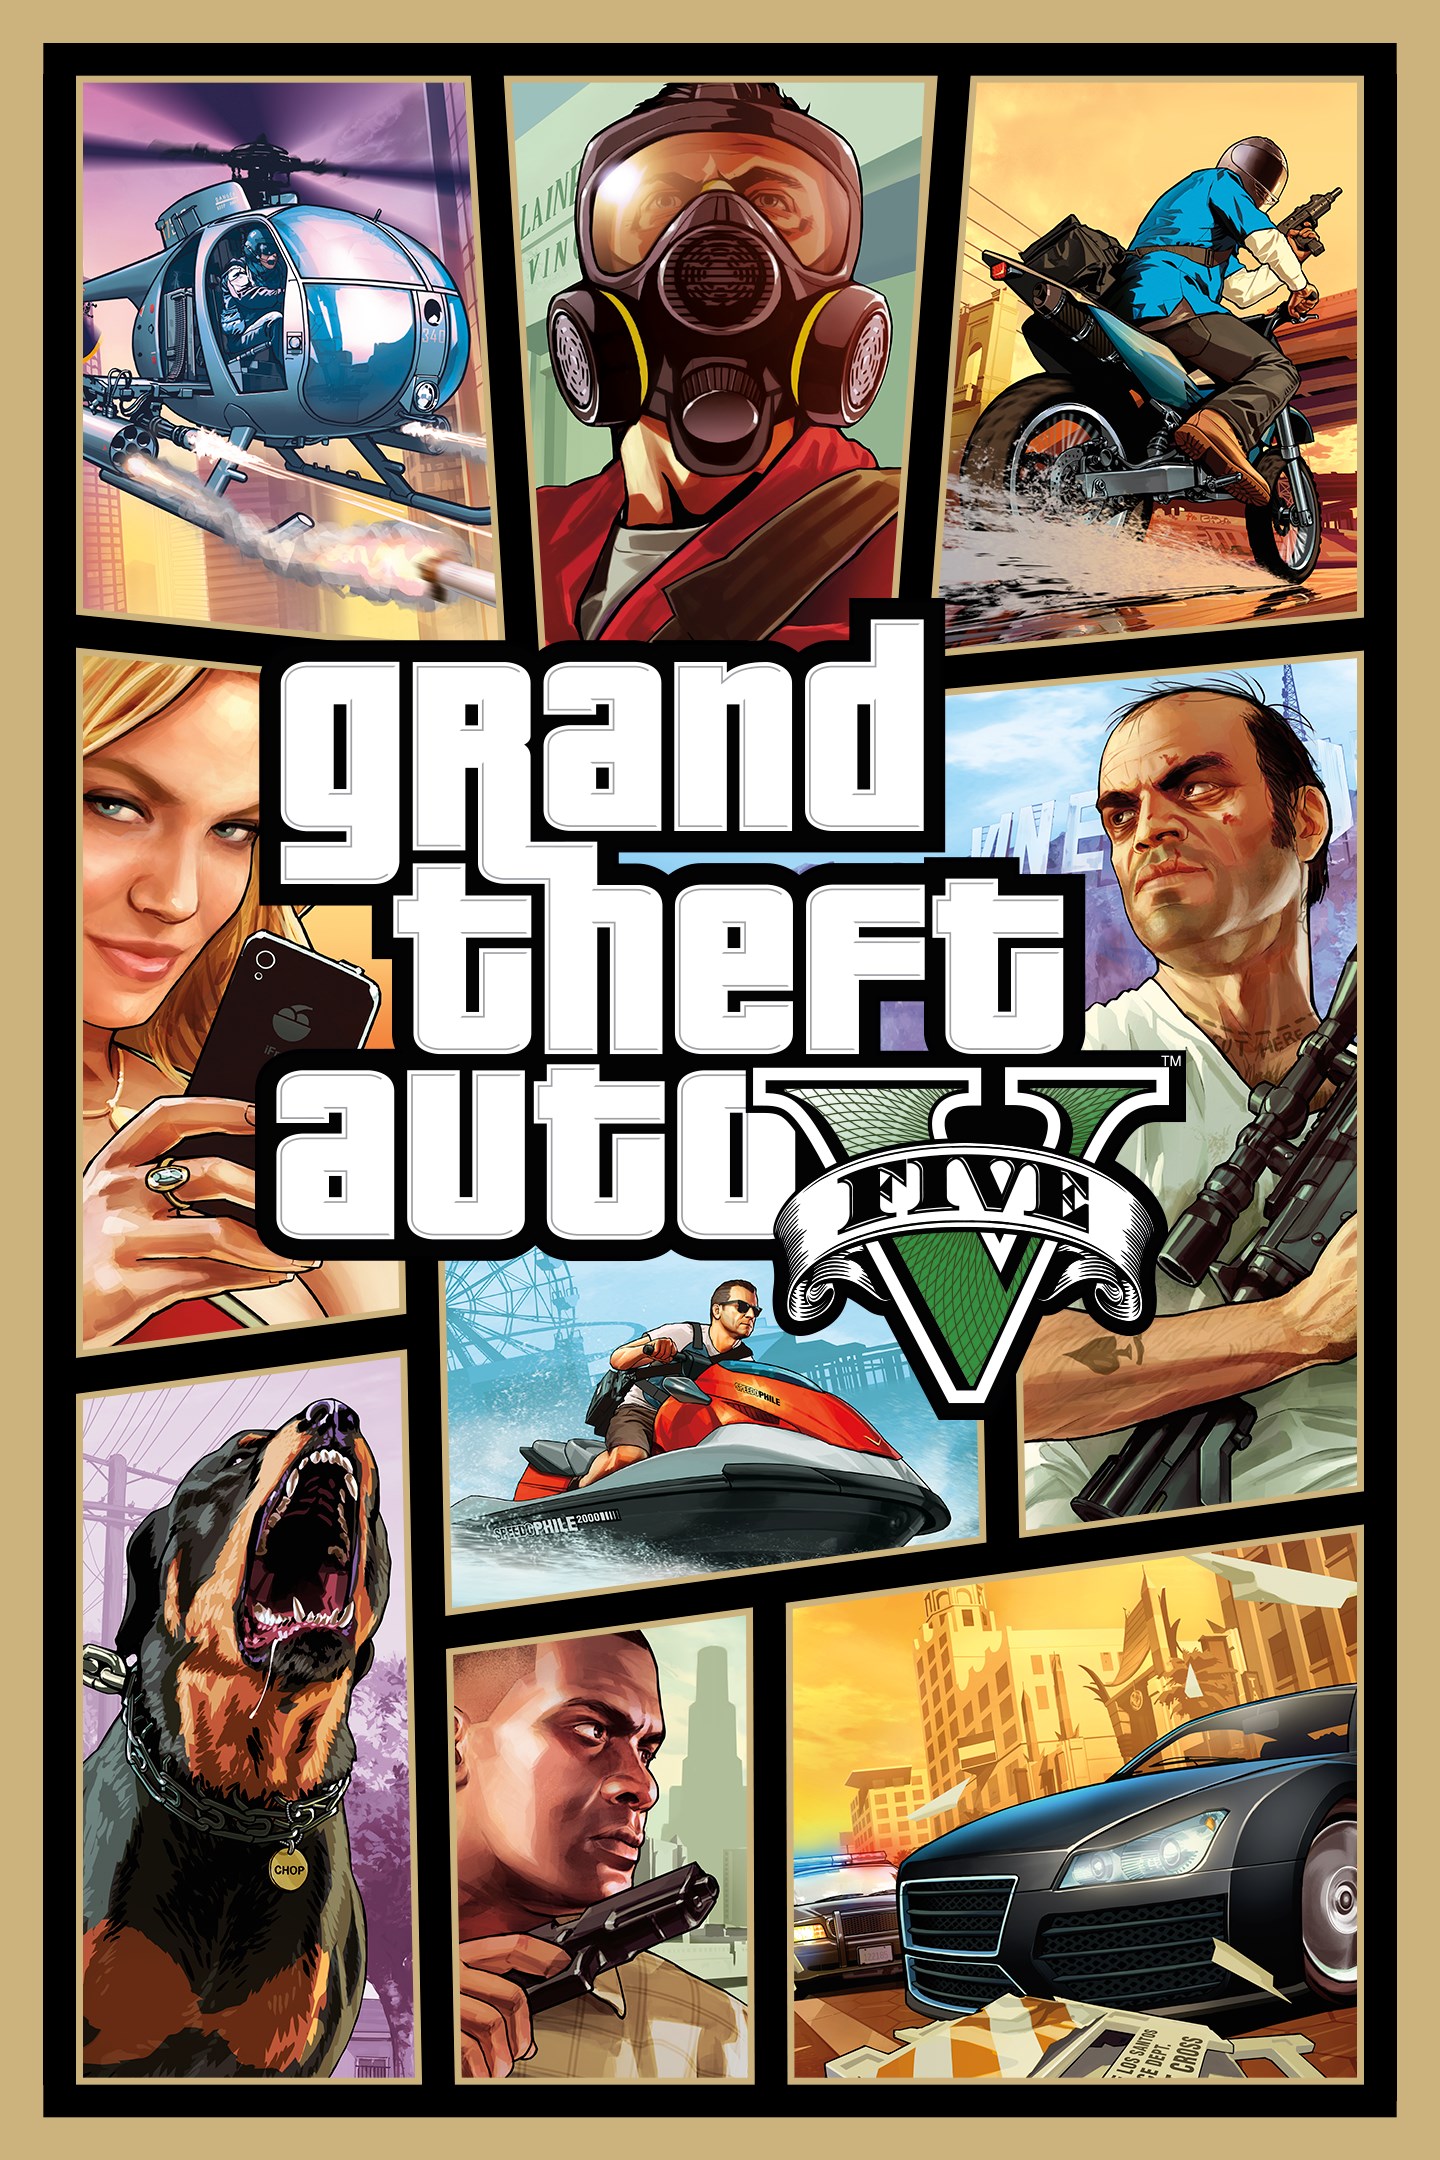 GTA 5 de graça! Grand Theft Auto V é novo jogo gratuito de PC da